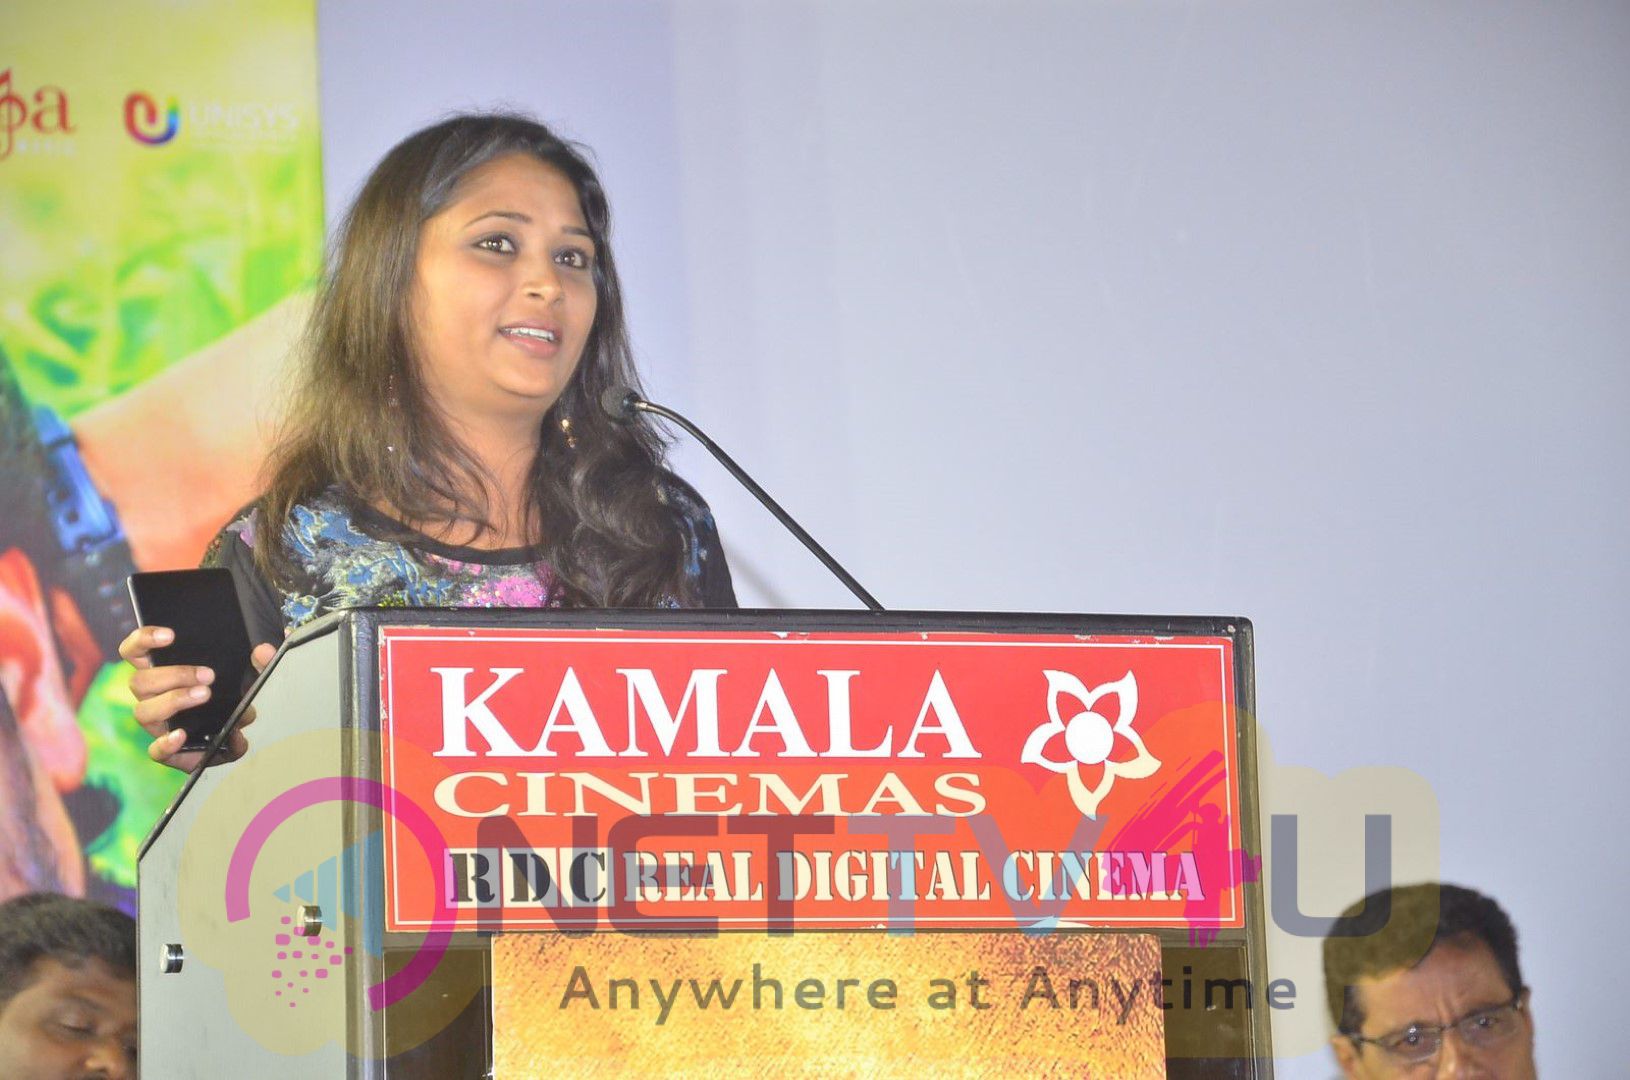 Egnapuram Tamil Movie Audio Launch Excellent Photos Tamil Gallery